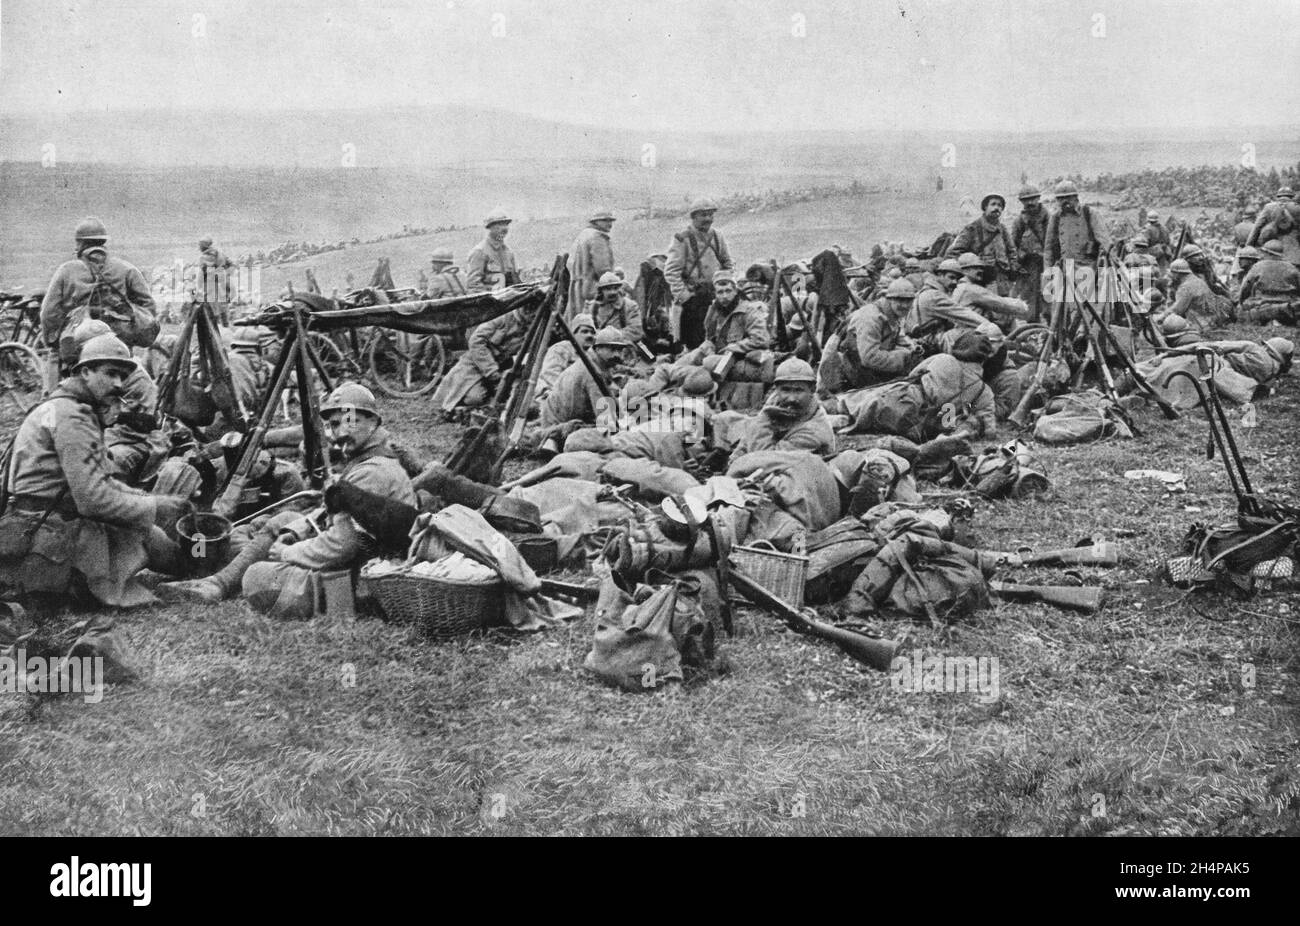 Soldats français reposant dans un bivouac, Verdun, département de Meuse, 1916, France Banque D'Images